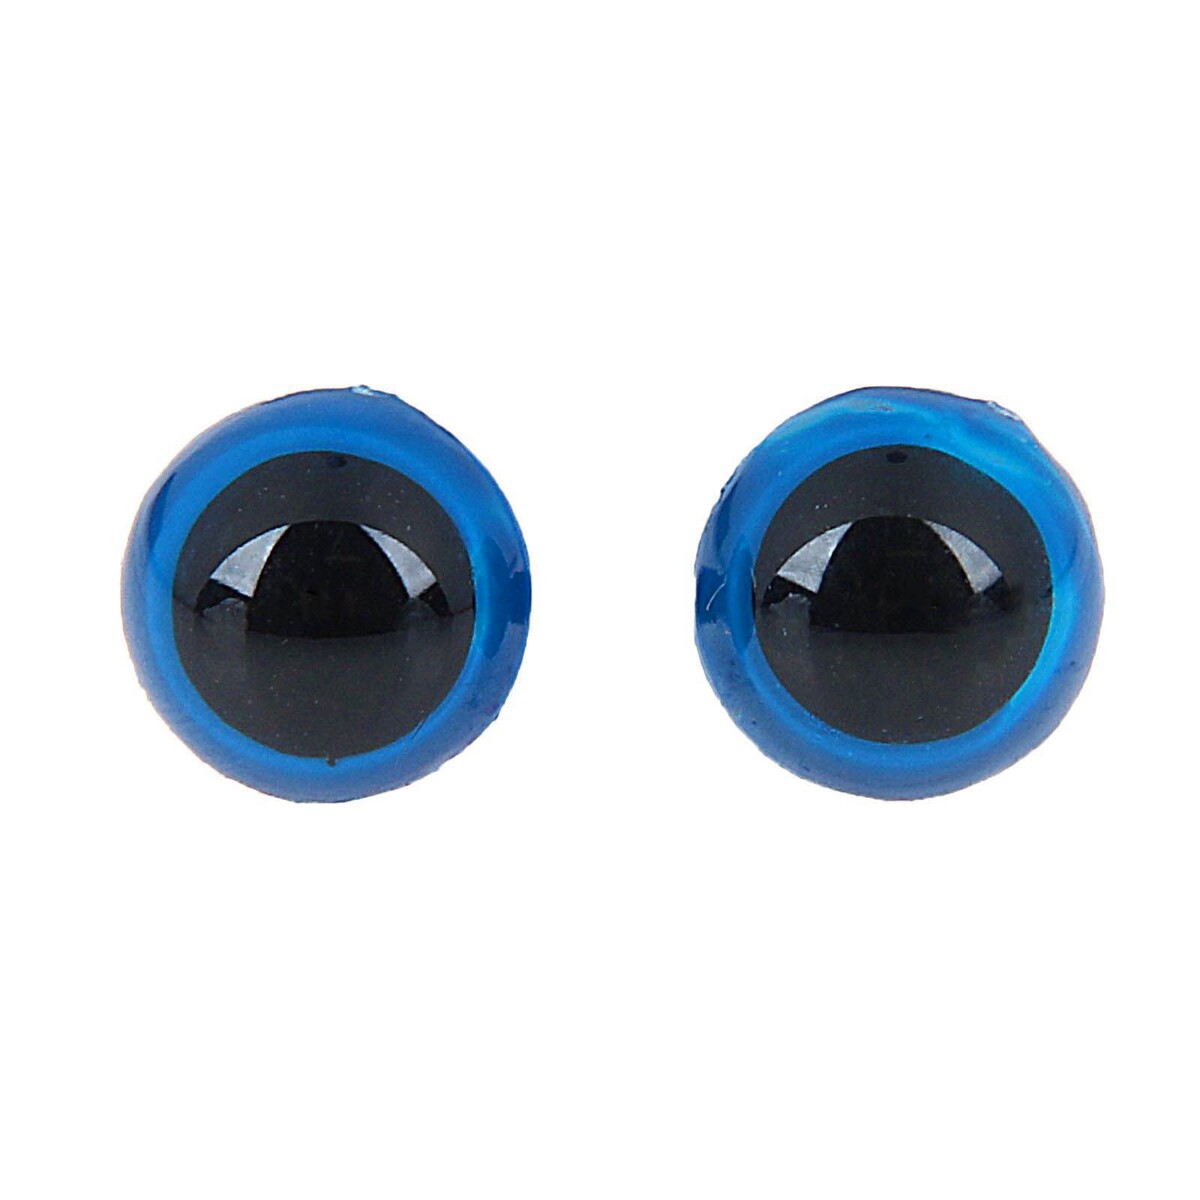 Глаза винтовые с заглушками, полупрозрачные, набор 4 шт, цвет голубой, размер 1 шт: 1,3×1,3 см глаза винтовые с заглушками набор 4 шт размер 1 шт 1 7×1 5 см